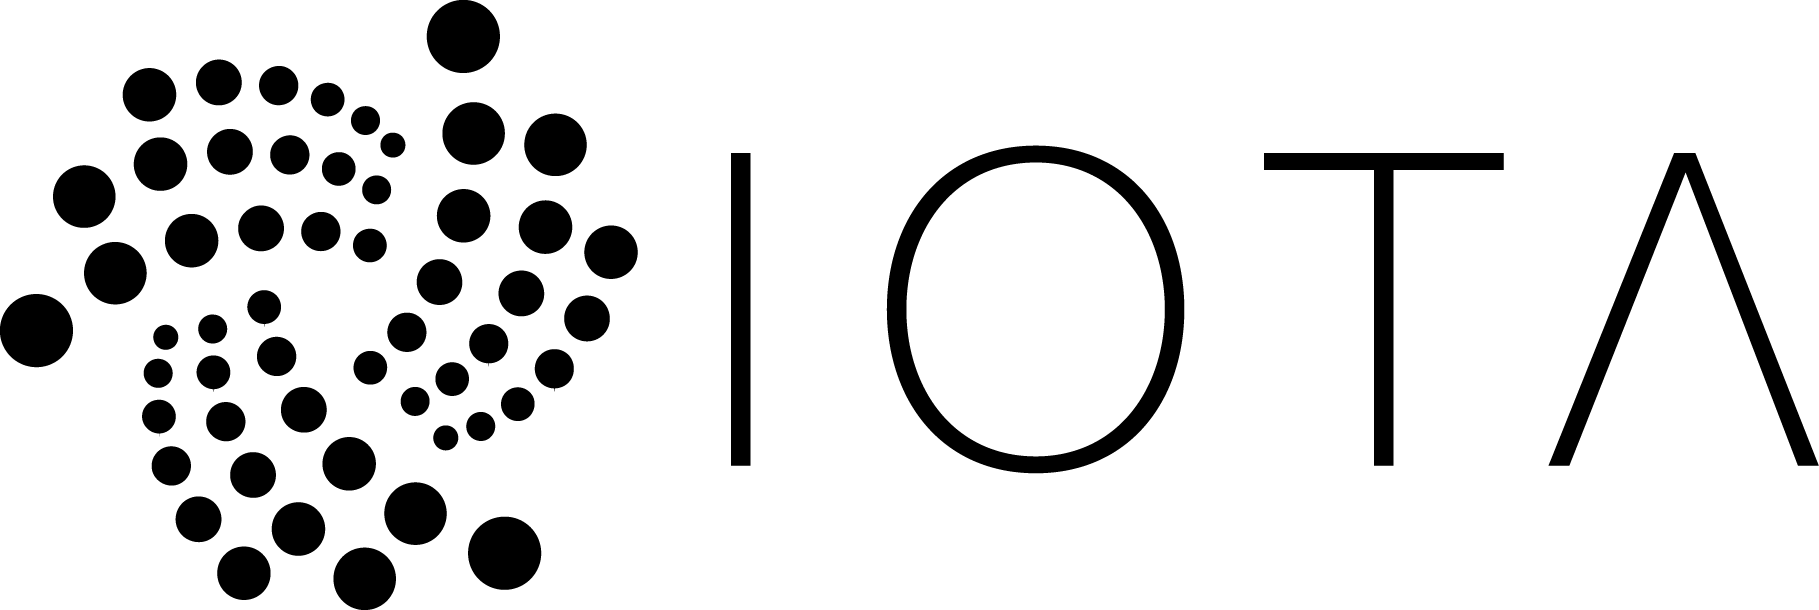 Iota Logo - File:Iota logo.png - Wikimedia Commons